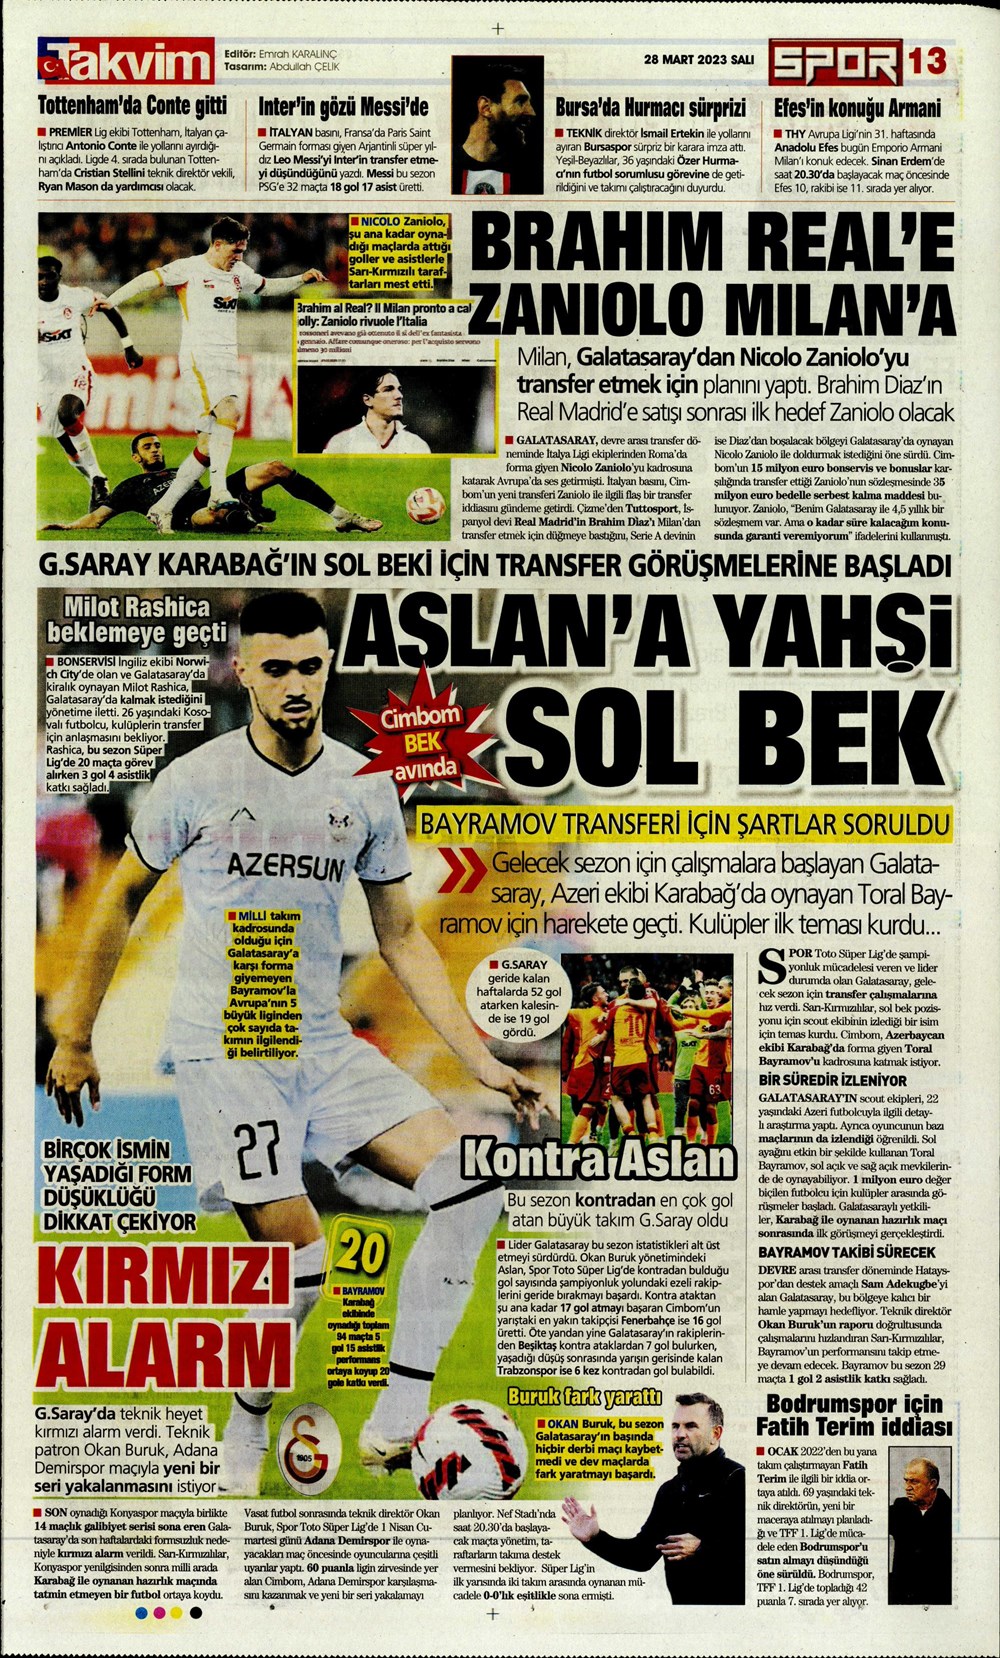 "Vurduğumuz gol olsun" - Sporun manşetleri - 30. Foto